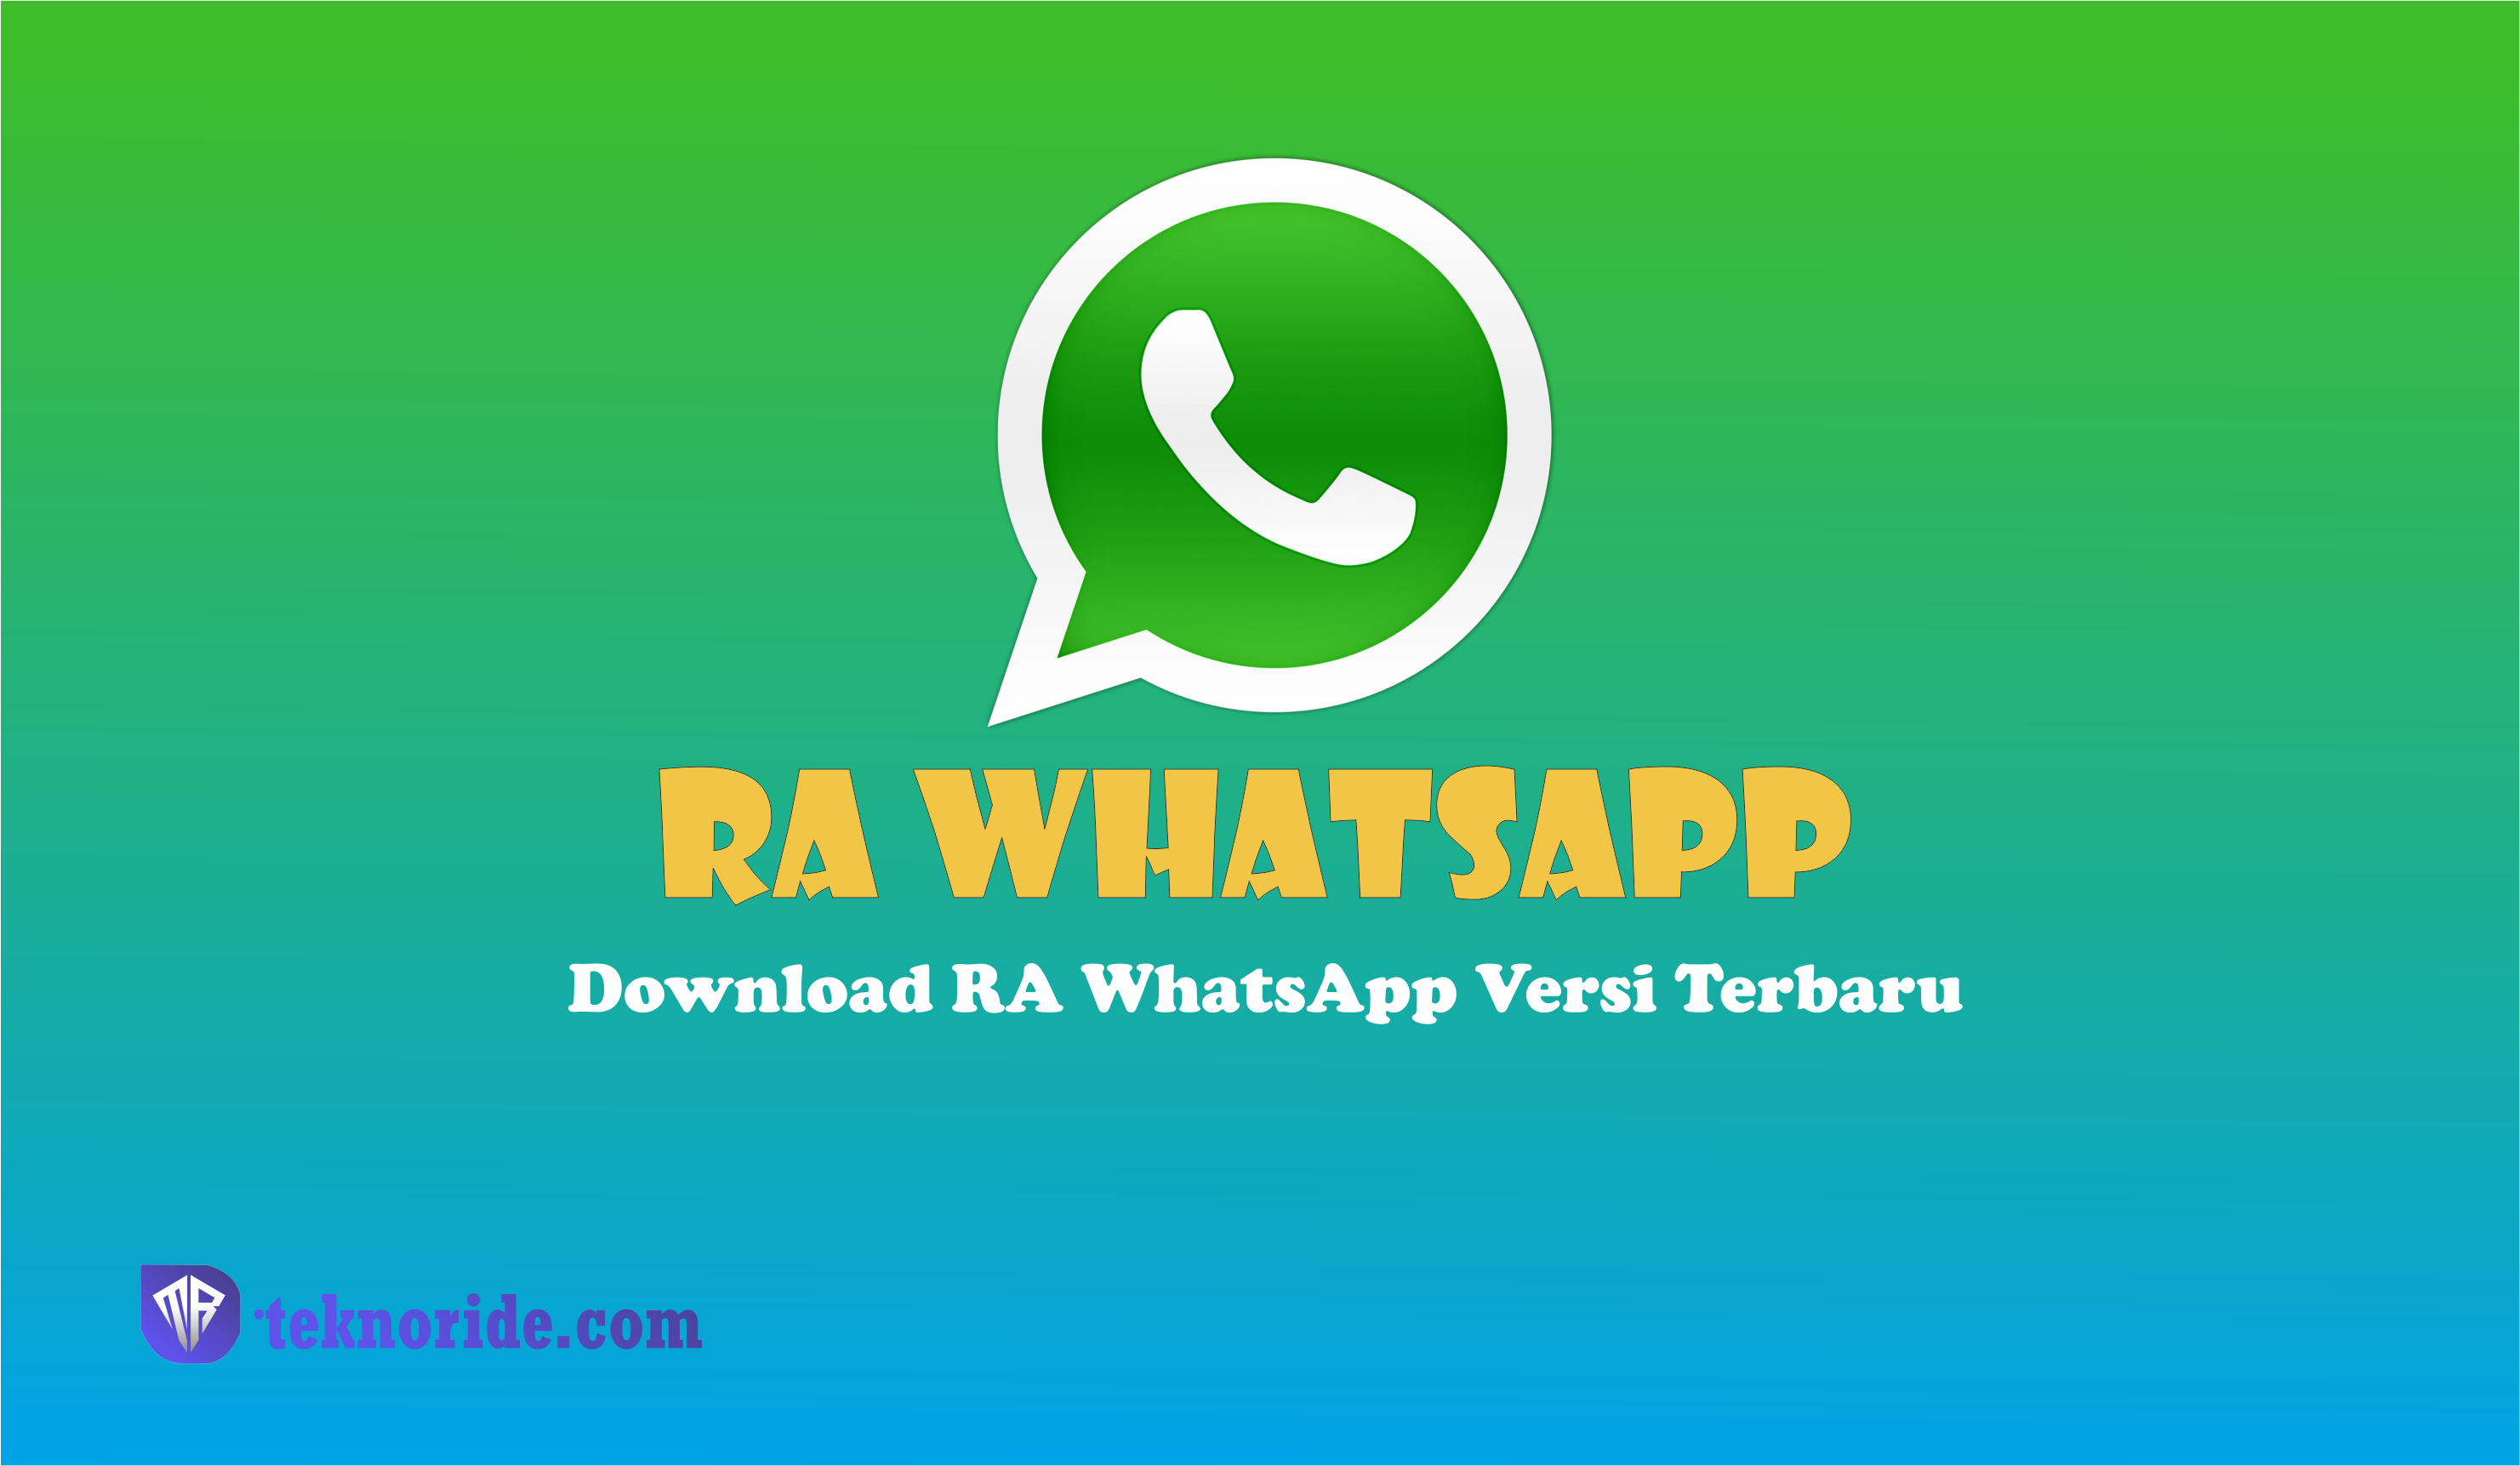 Download RA WhatsApp Versi Terbaru